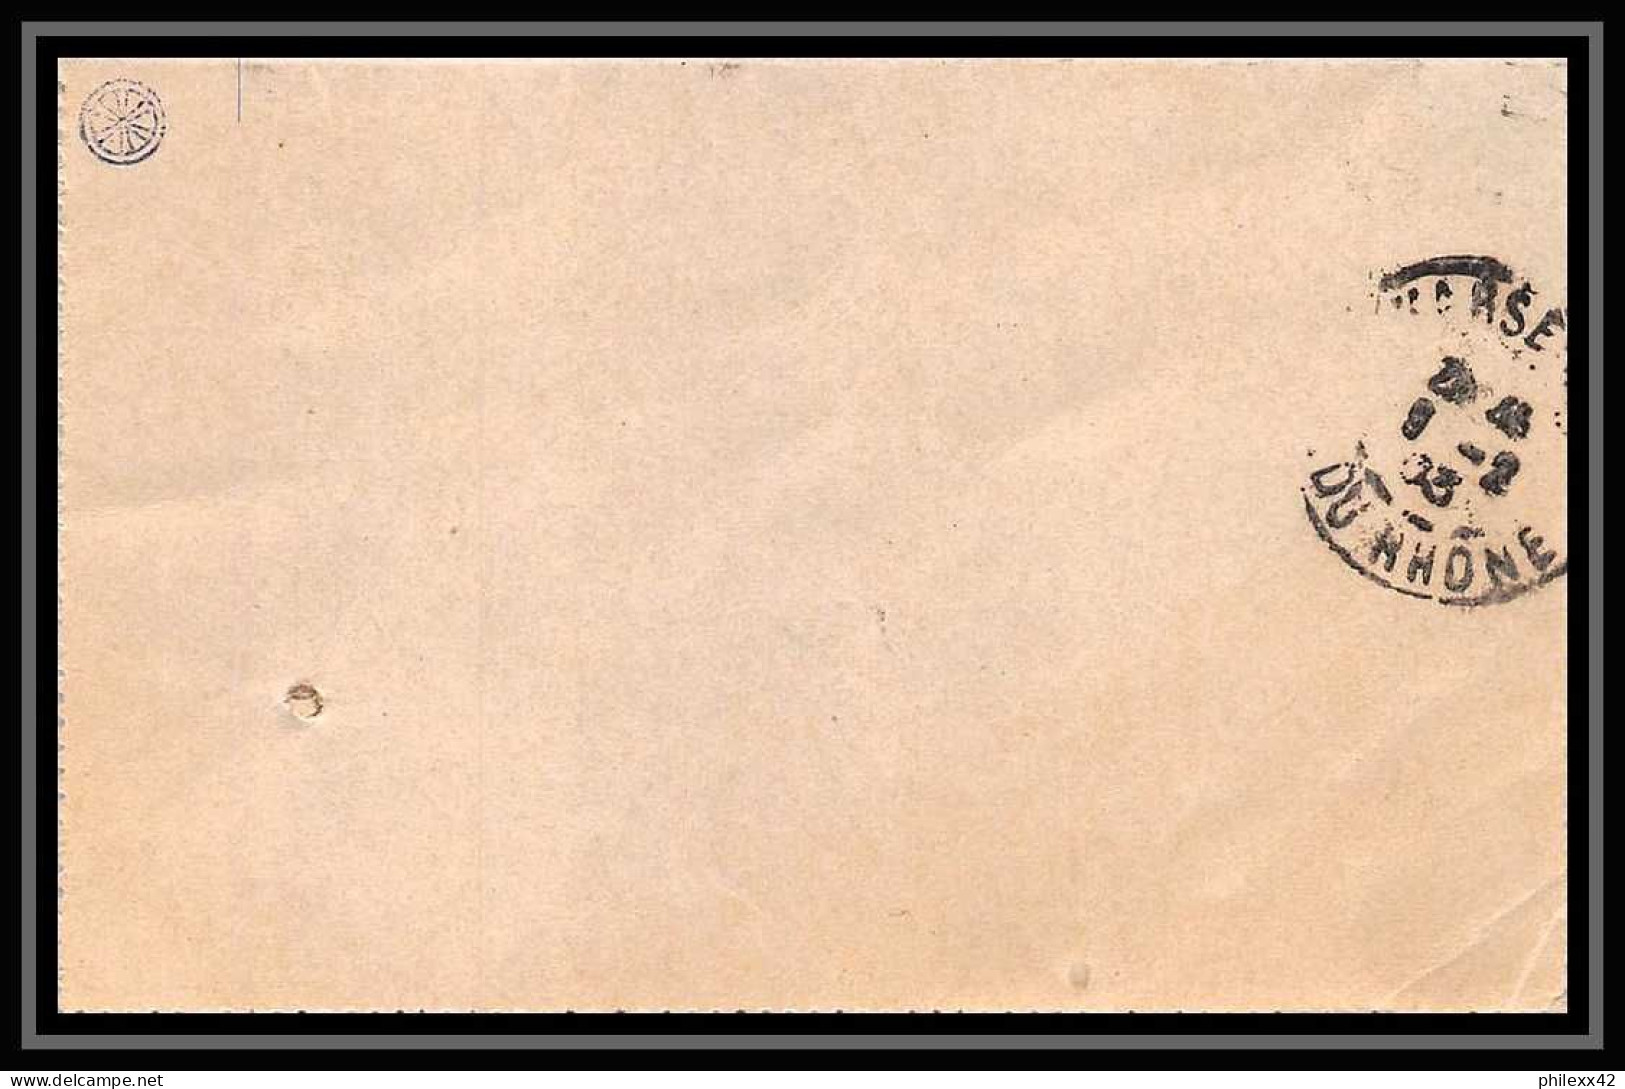 107598 Carte Lettre Entier Postal Stationery Bouches Du Rhone Mouchon 15c Marseille Saint Marcel 1903 - Kartenbriefe